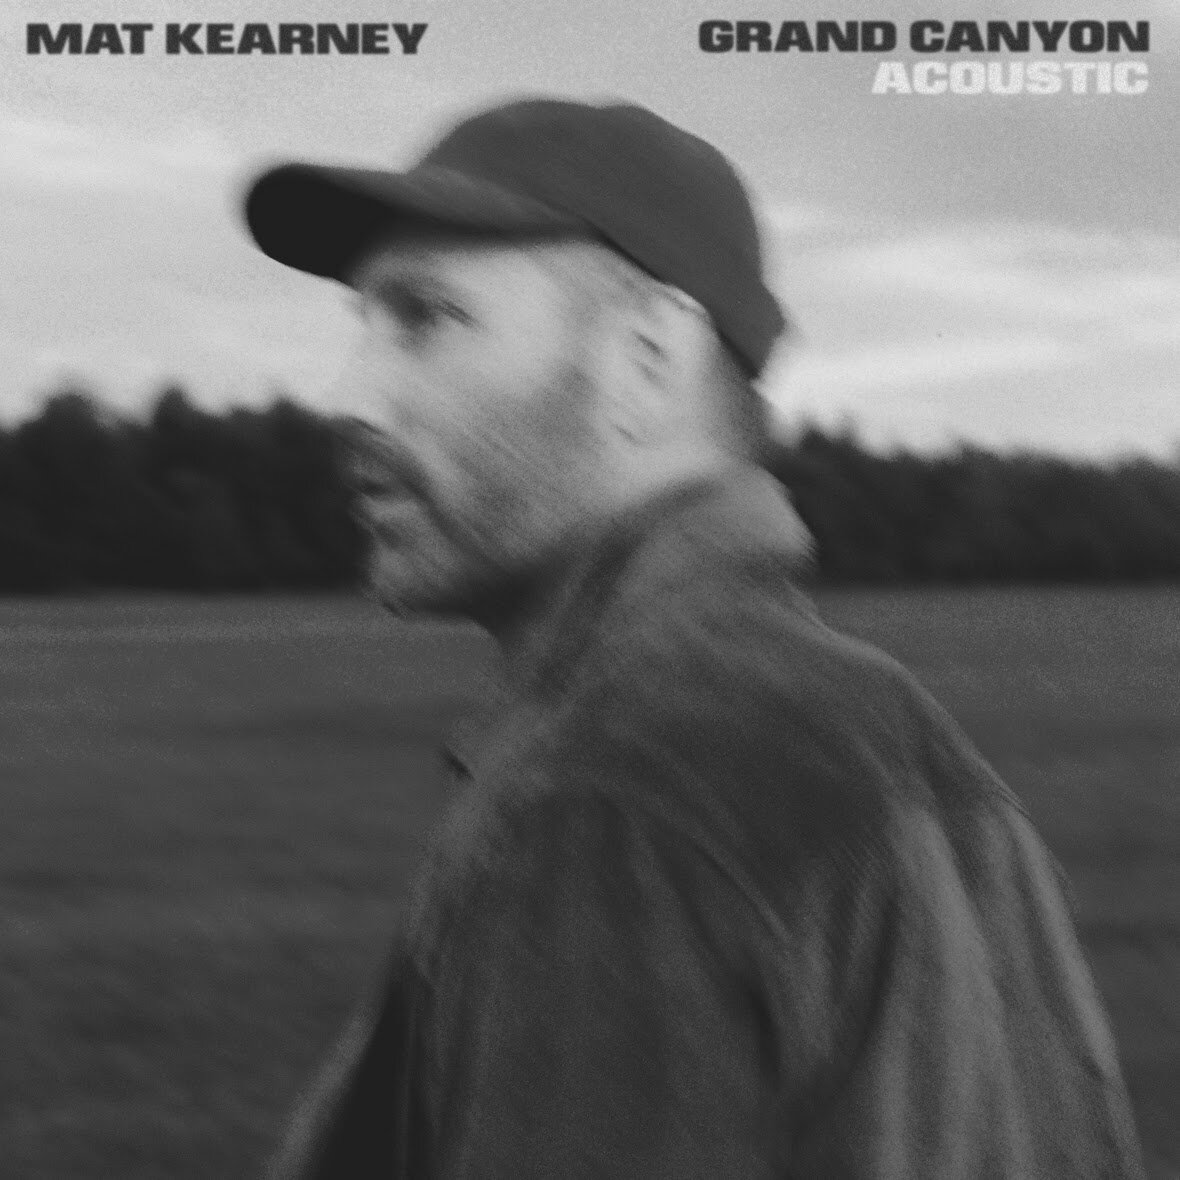 Mat Kearney - "Grand Canyon" (Acoustic) - Single